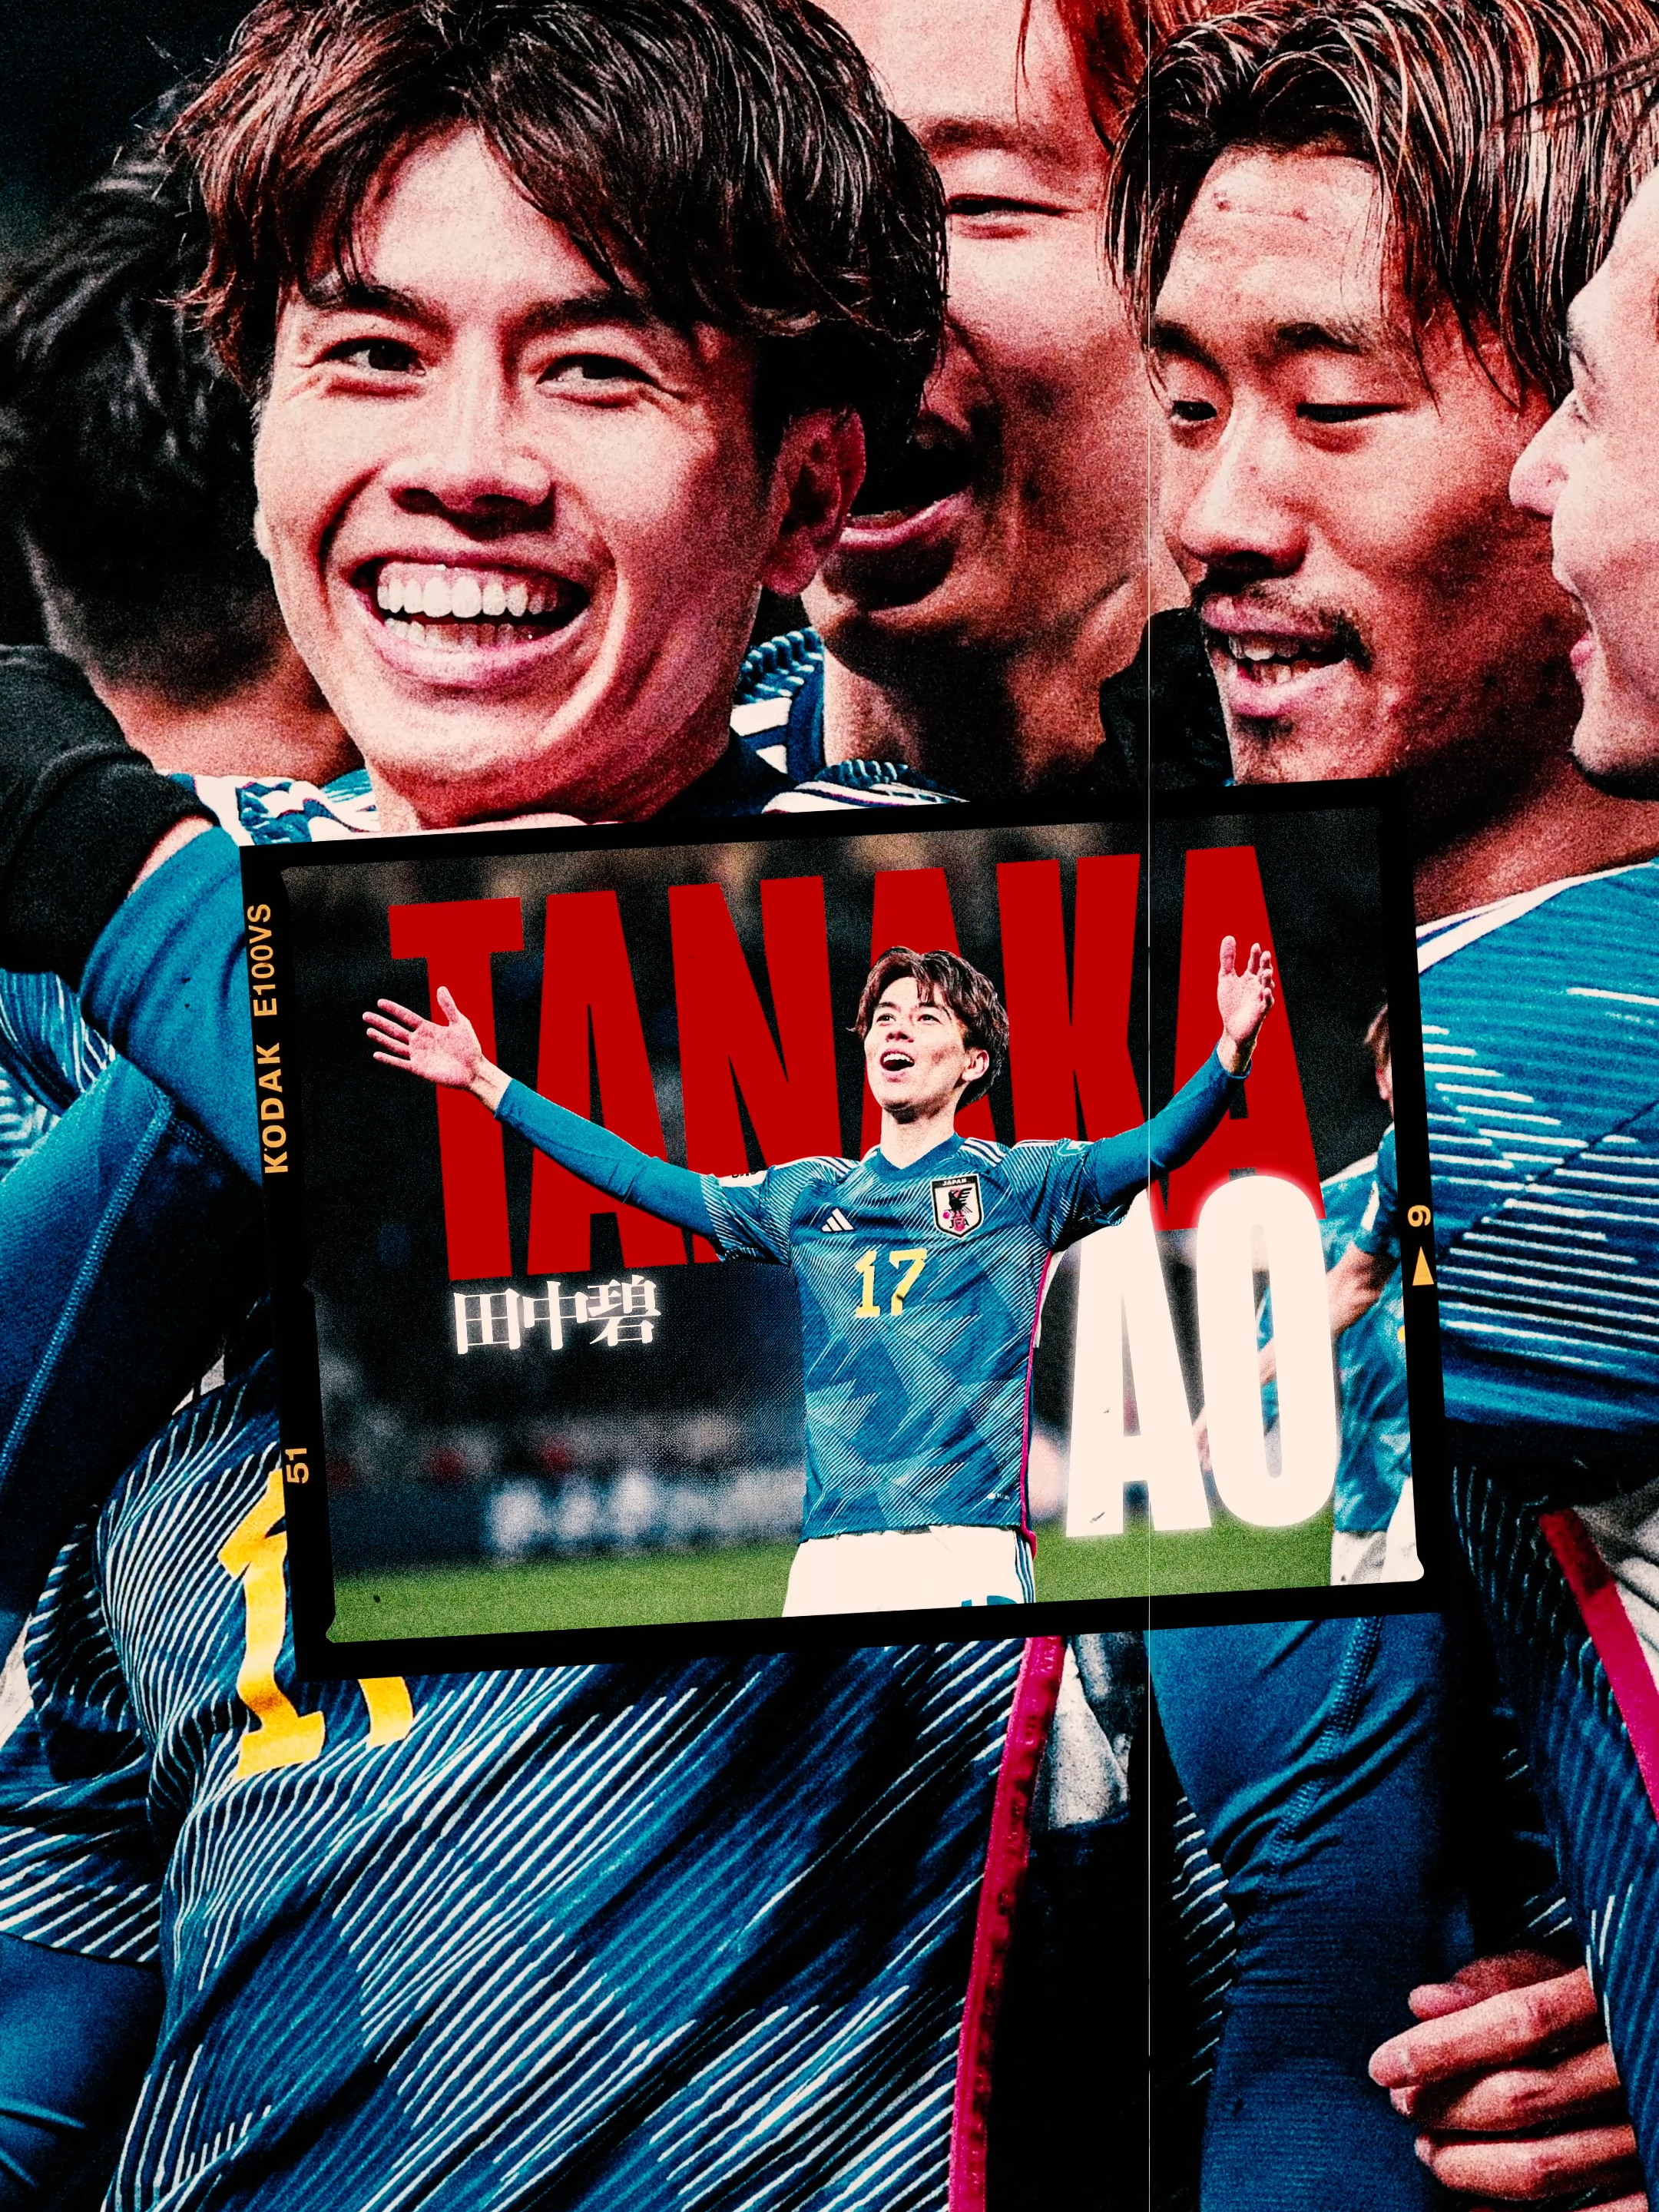 田中選手のゴールで印象に残っているものはー？ #サッカー日本代表#スポーツ#田中碧